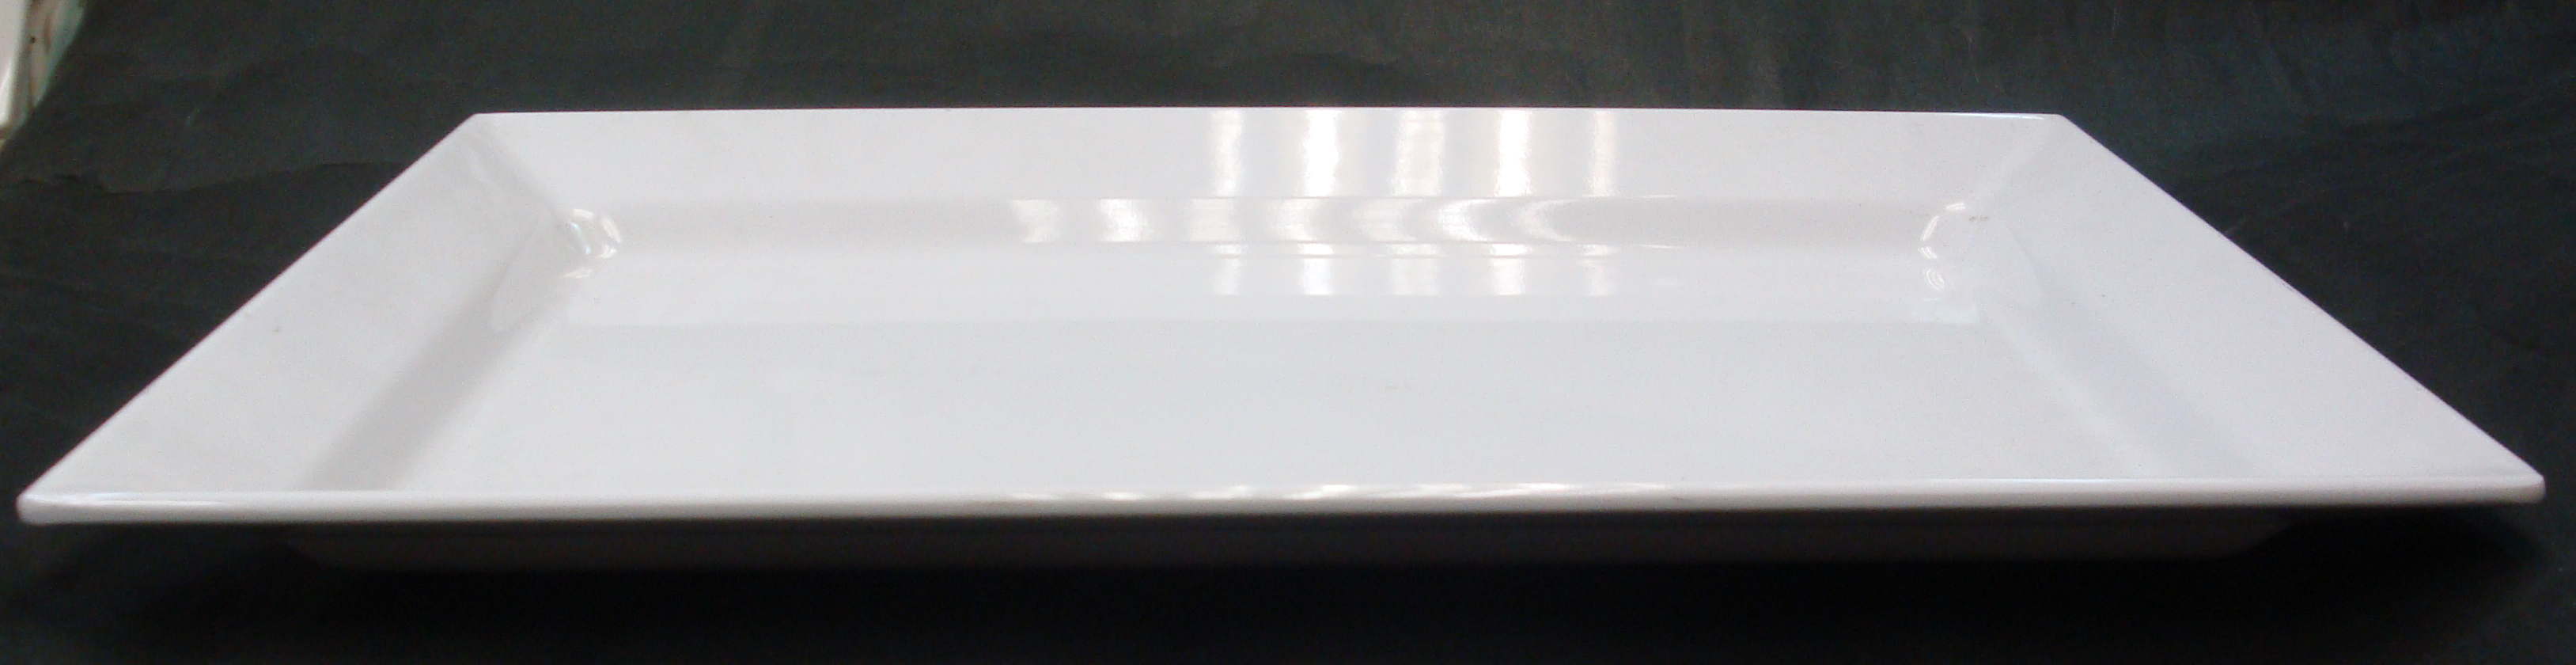 科學瓷磁白長方碟